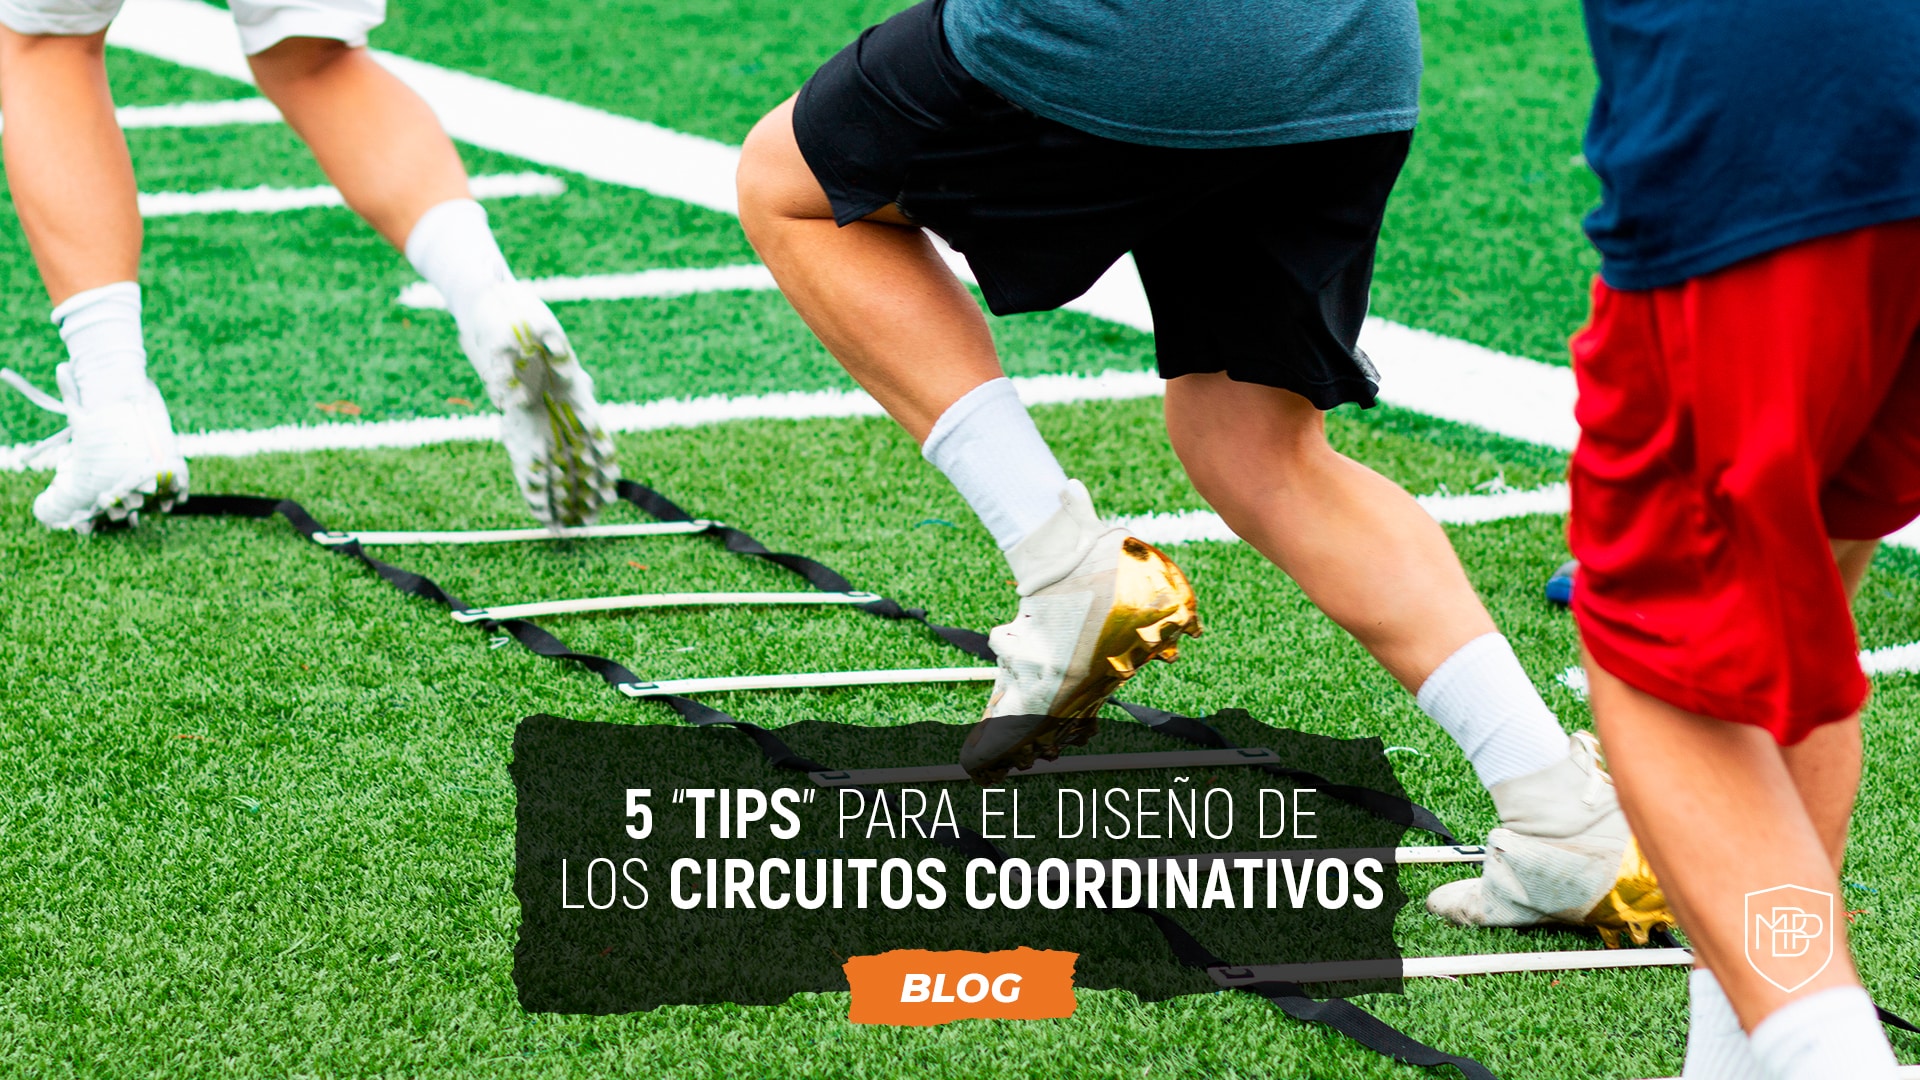 En este momento estás viendo 5 “tips” para el diseño de los circuitos coordinativos